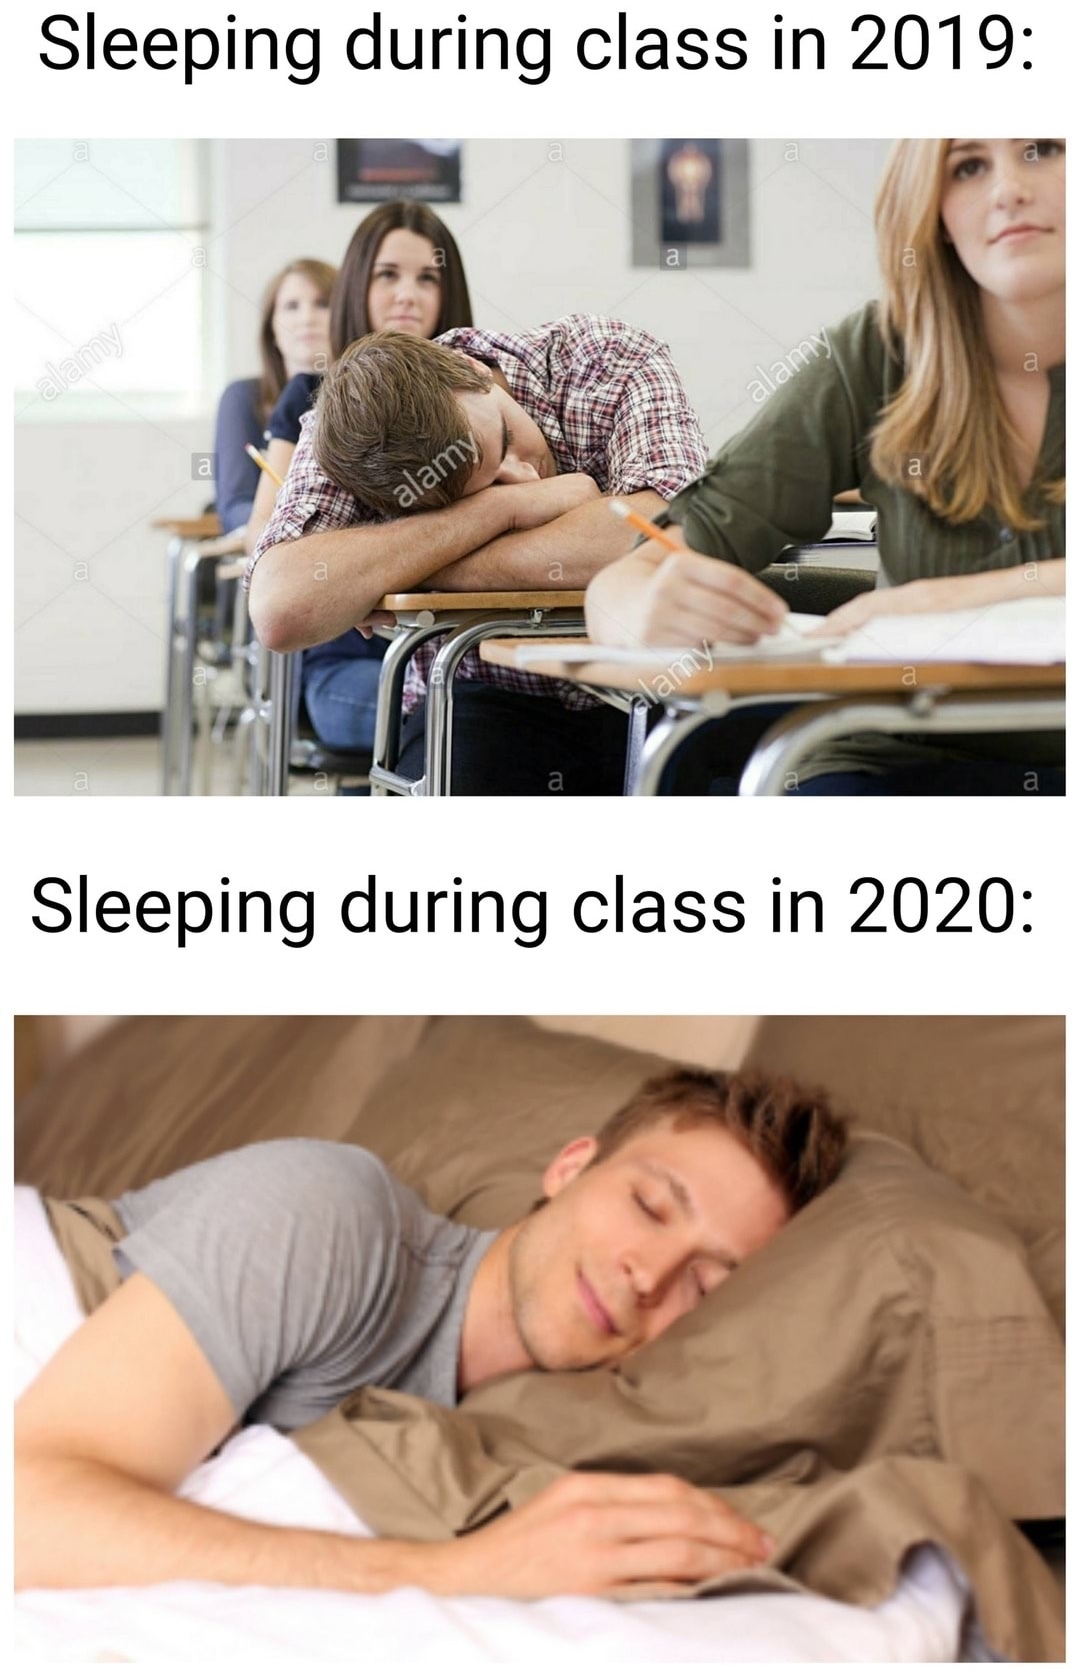 school in 2020 be like - meme